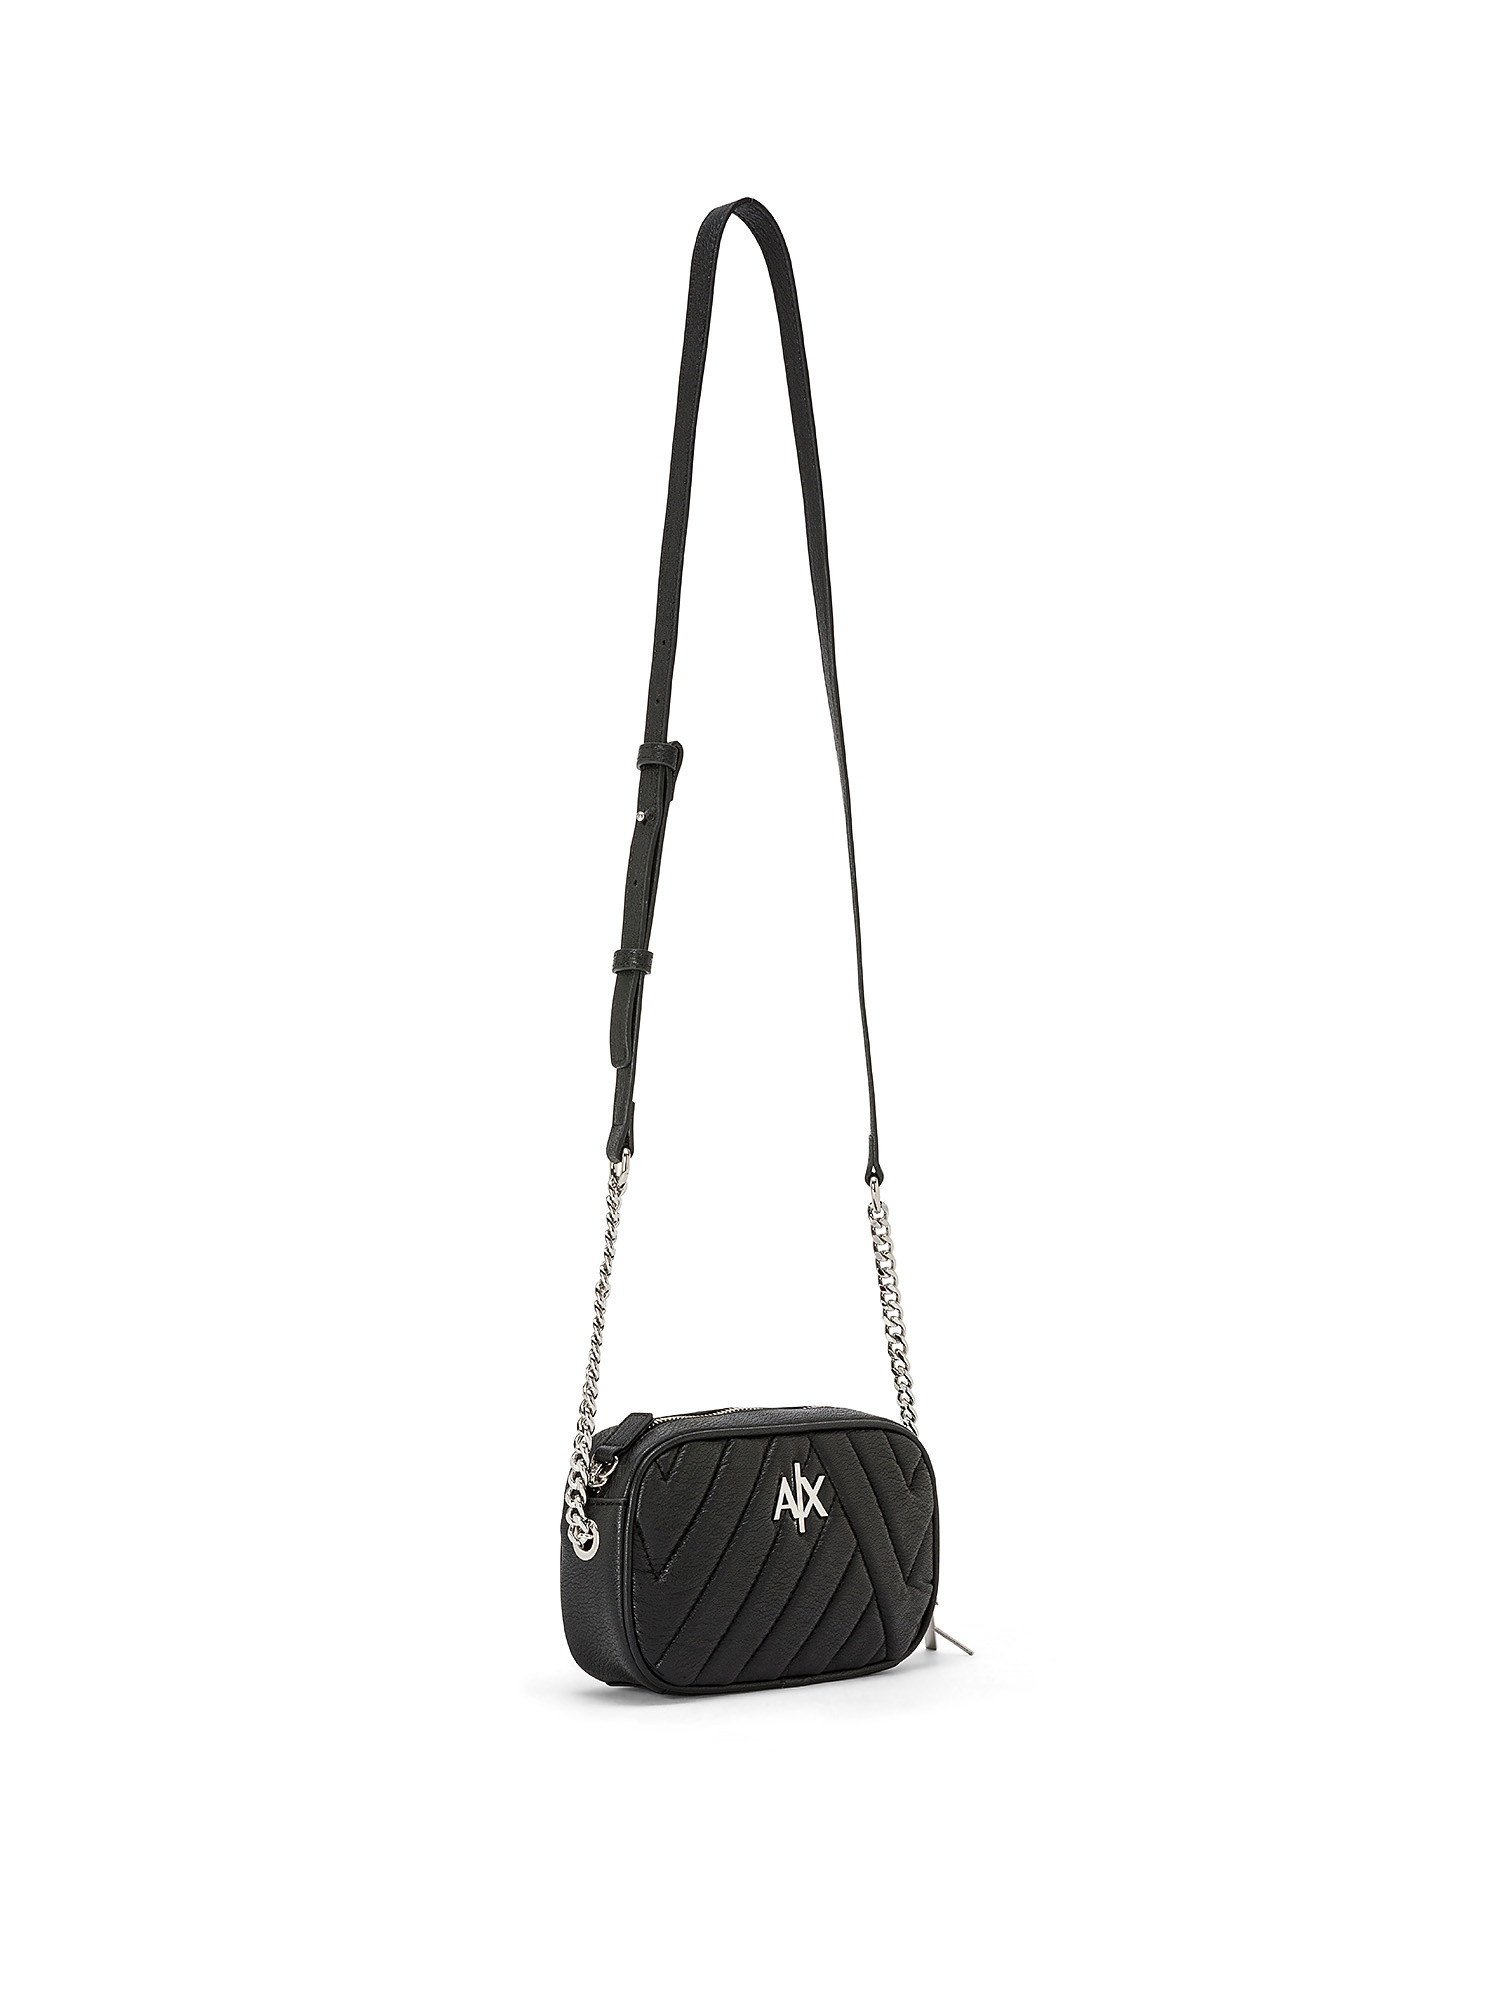 Armani Exchange - Clutch bag with shoulder strap, Black, large image number 1